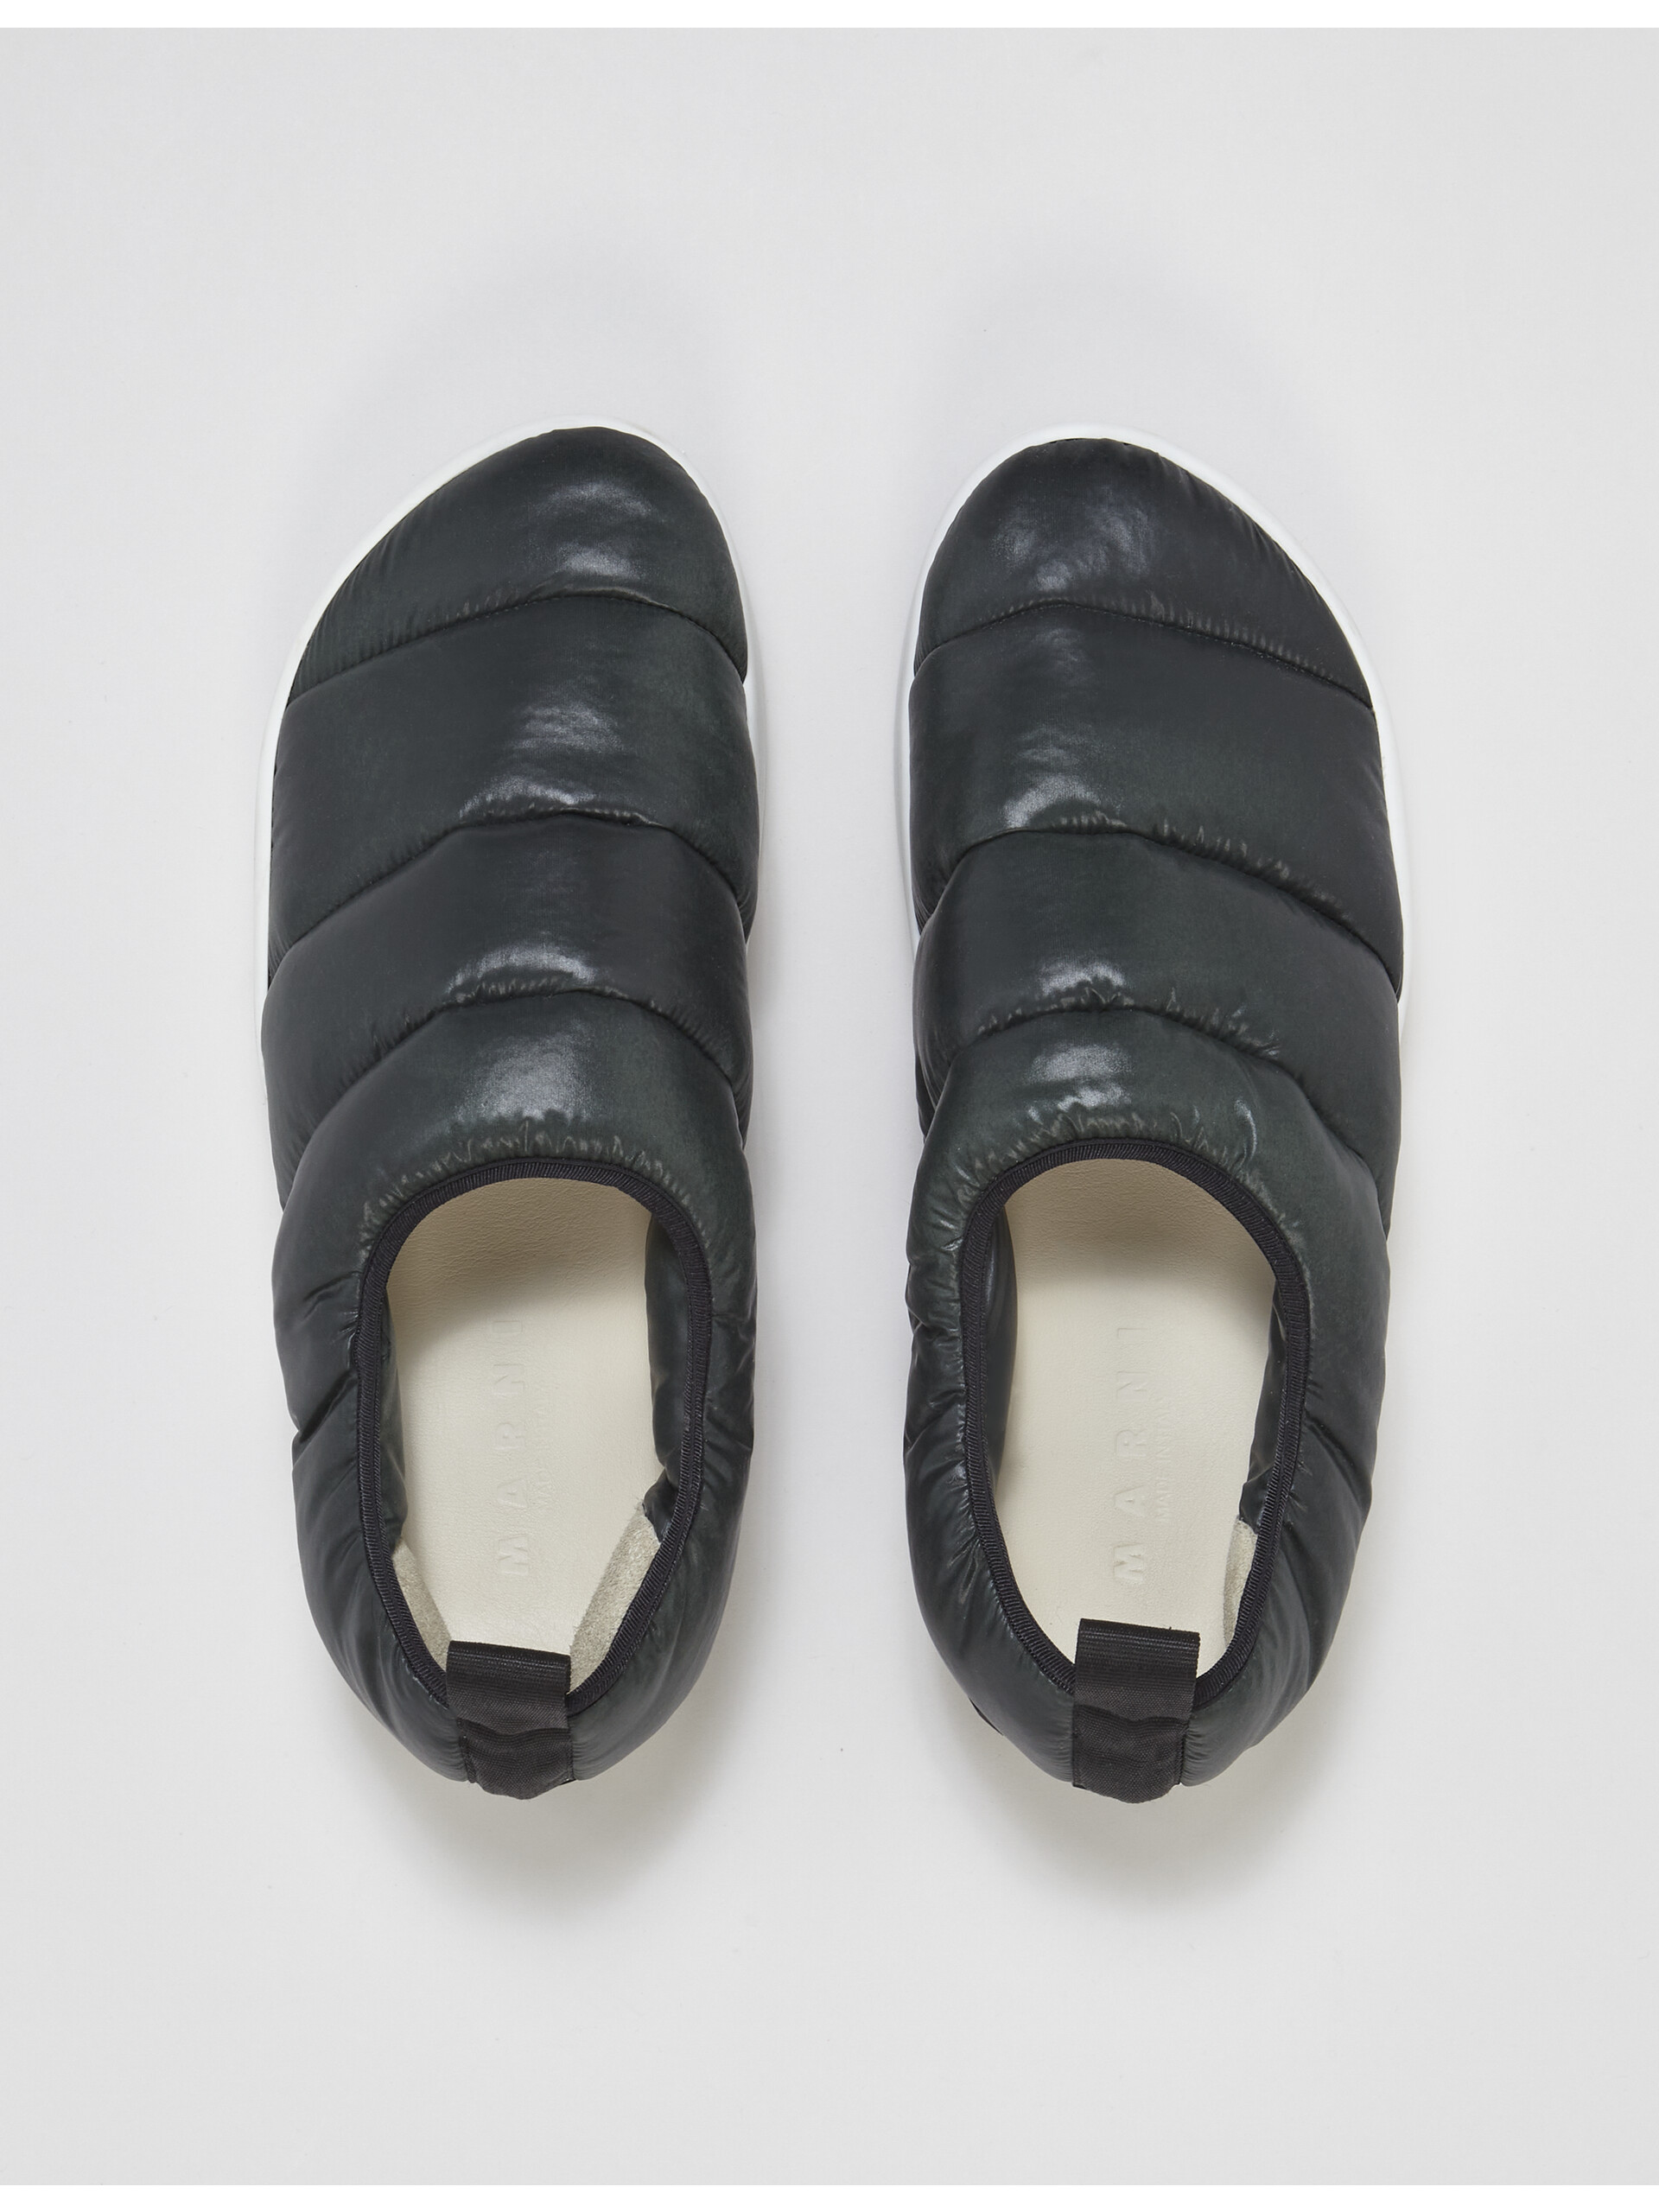 Sneaker PAW senza lacci in nylon trapuntato - Sneakers - Image 4